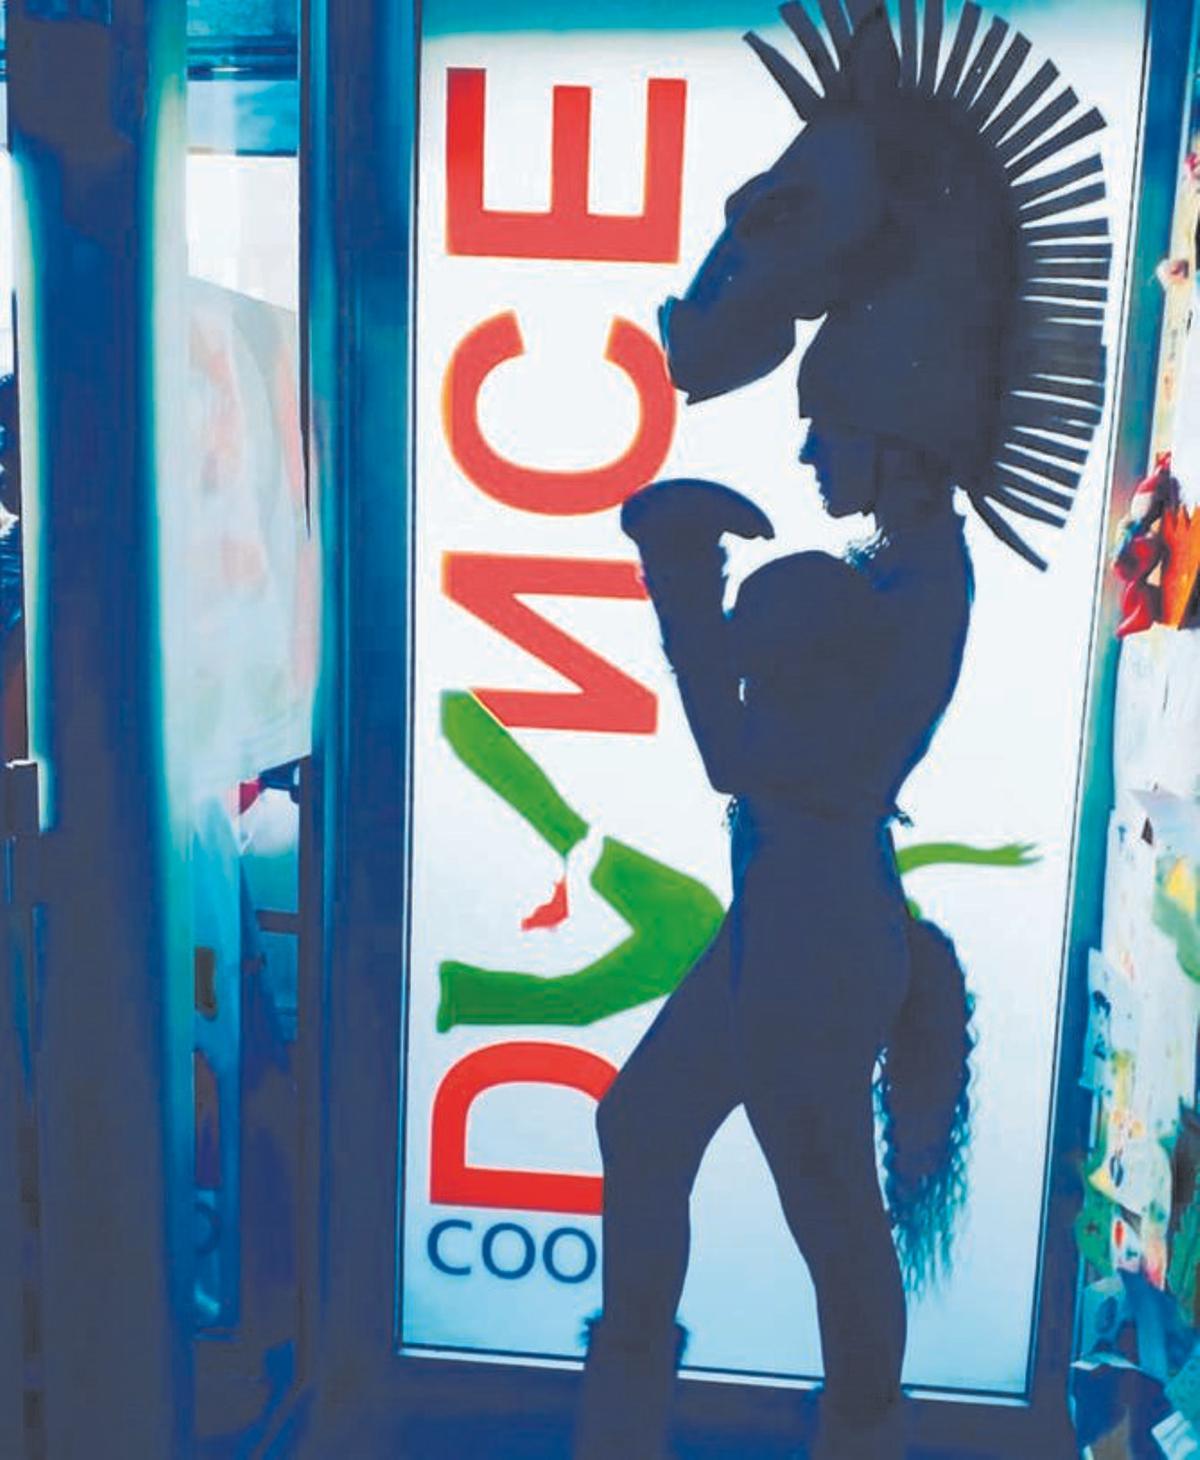 Cool Dance participa en los boatos de Moros y Cristianos, aportando un elemento cultural y artístico a la fiesta.